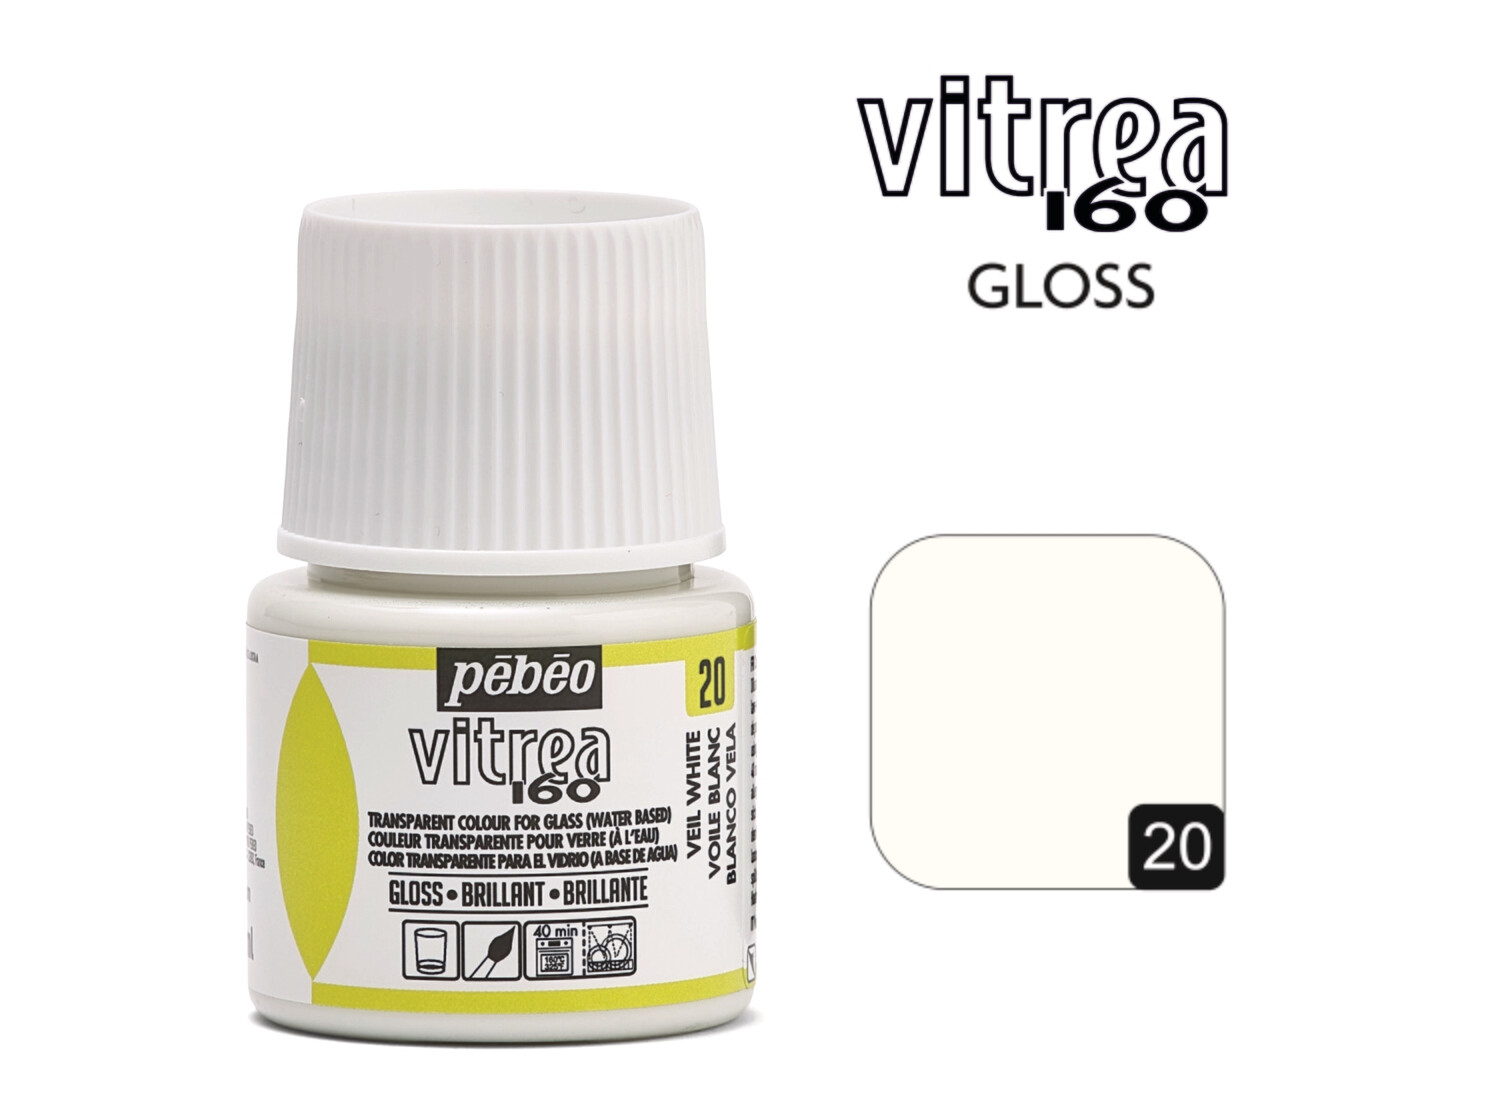 Vitrea-160 Gloss 45ml 20T Veil White